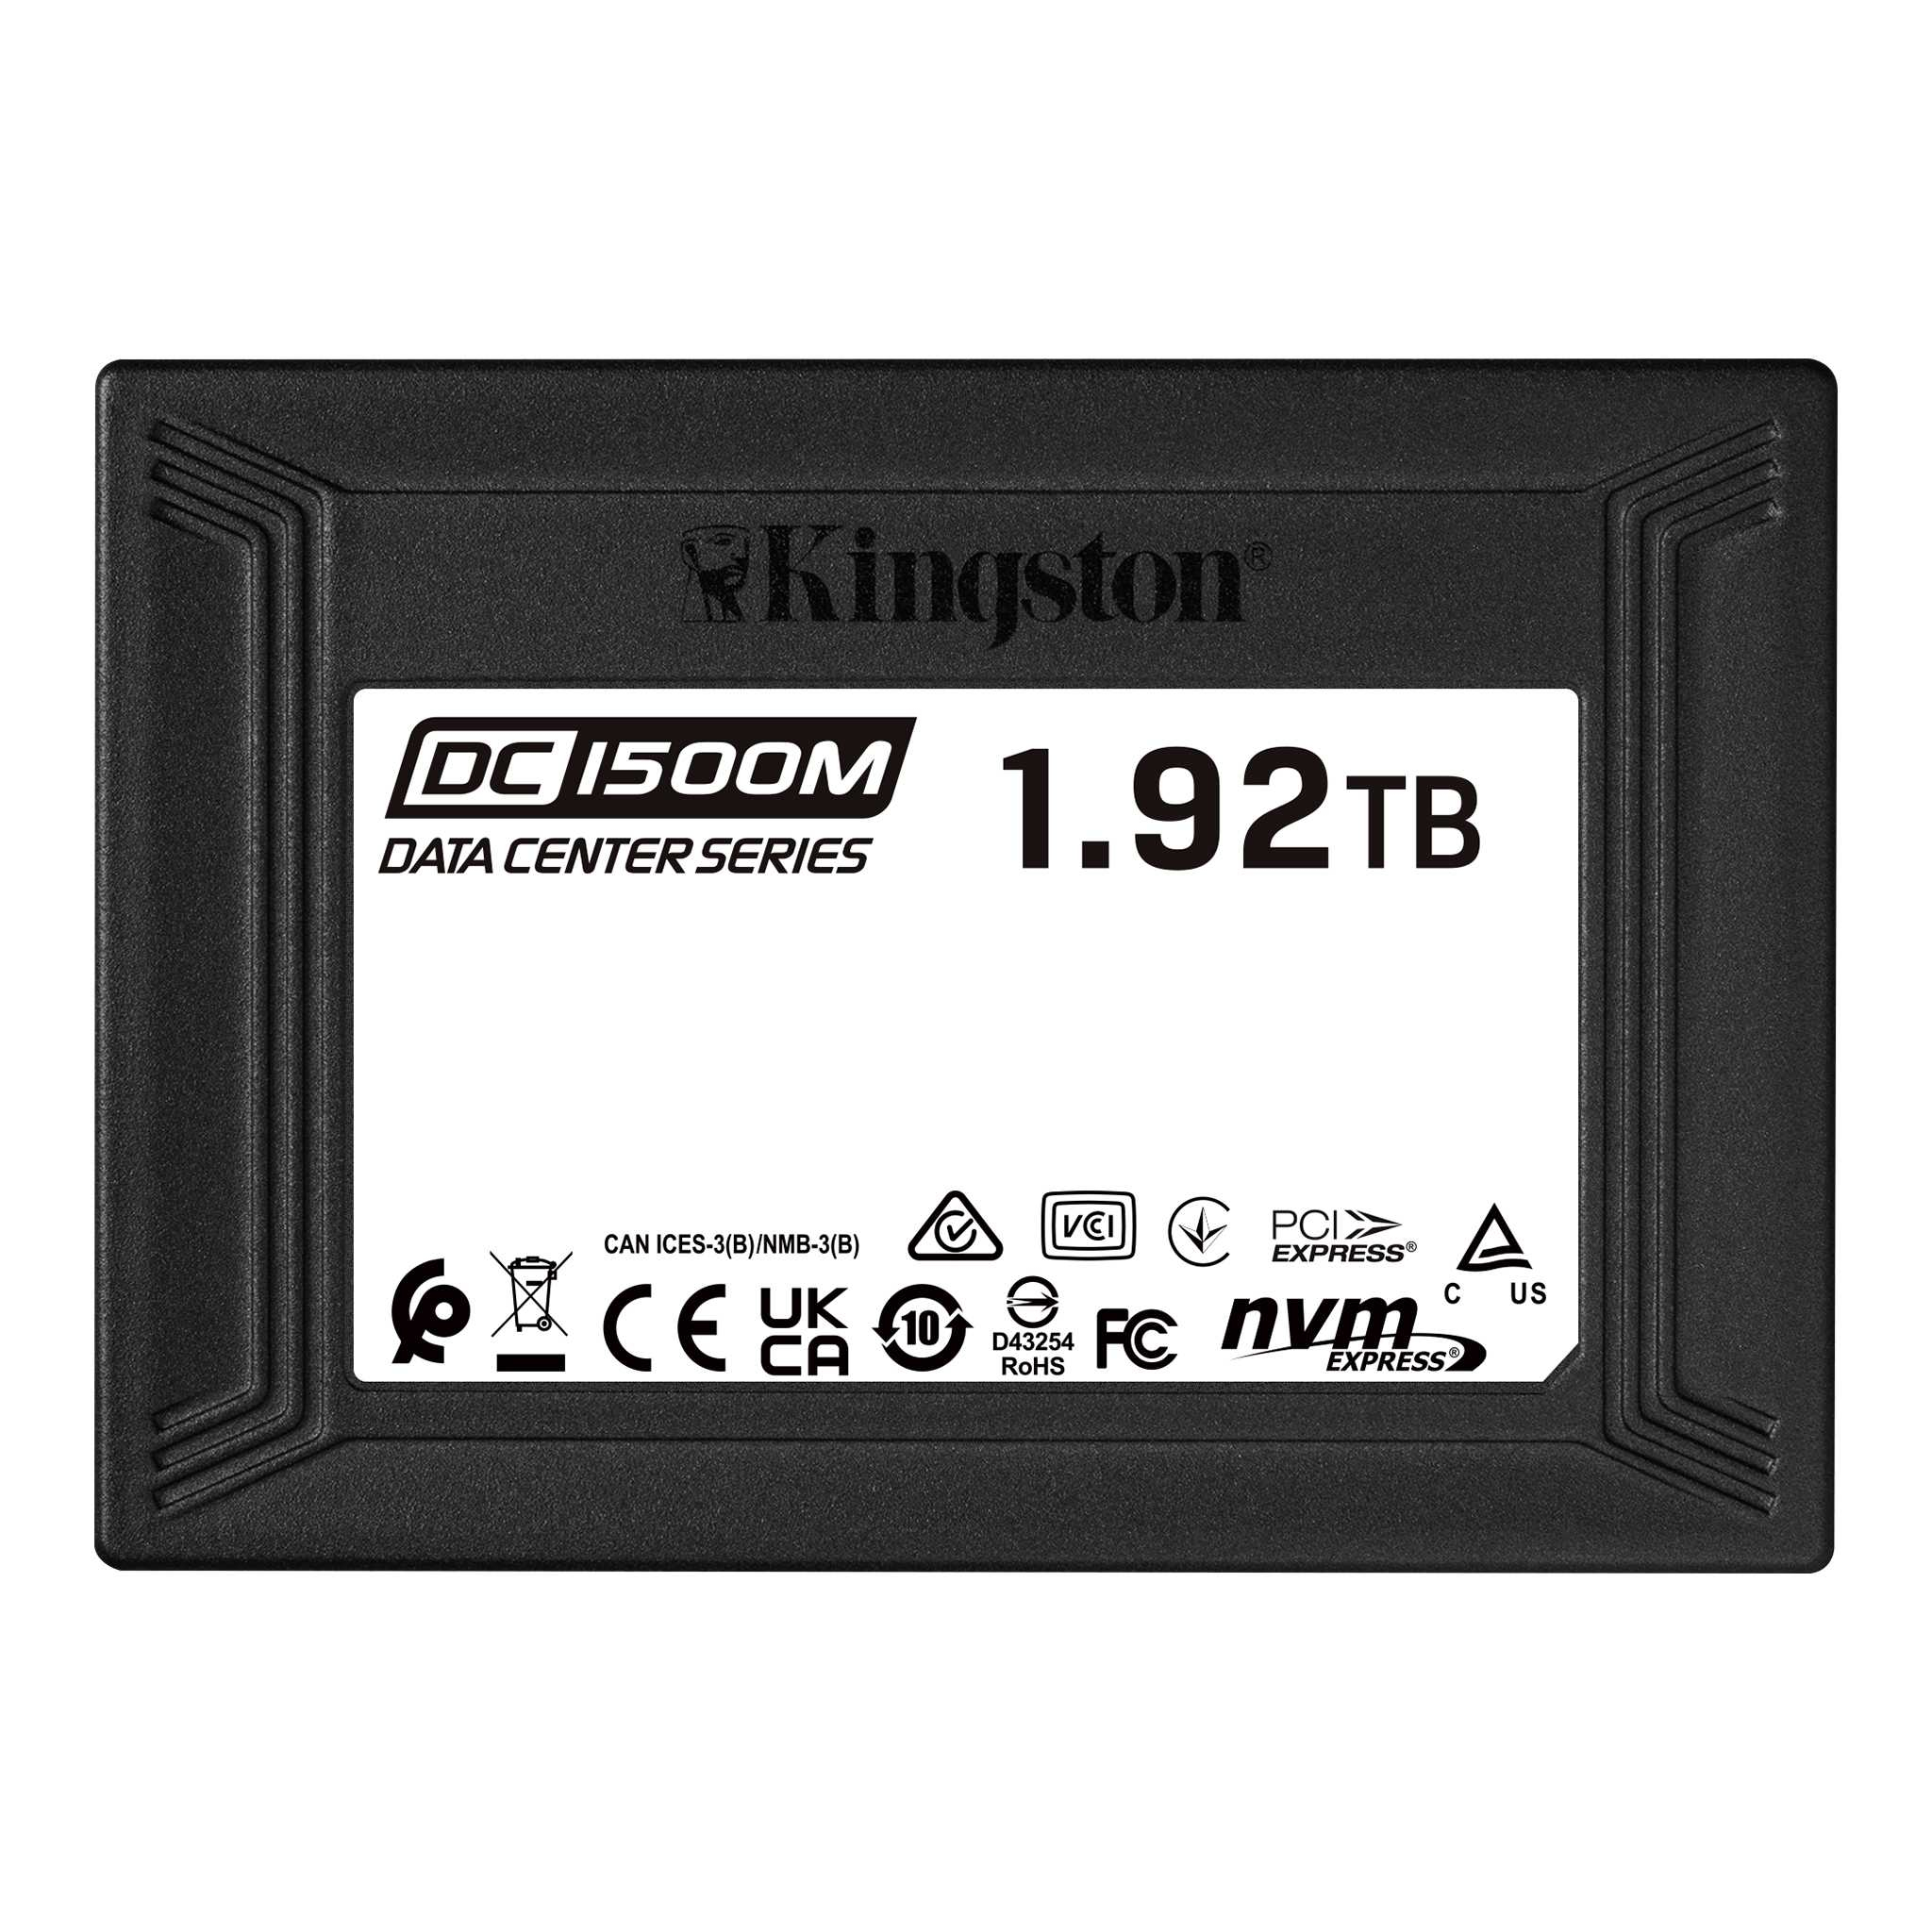 KINGSTON SSD 1920GB DC1500M U.2 NVMe